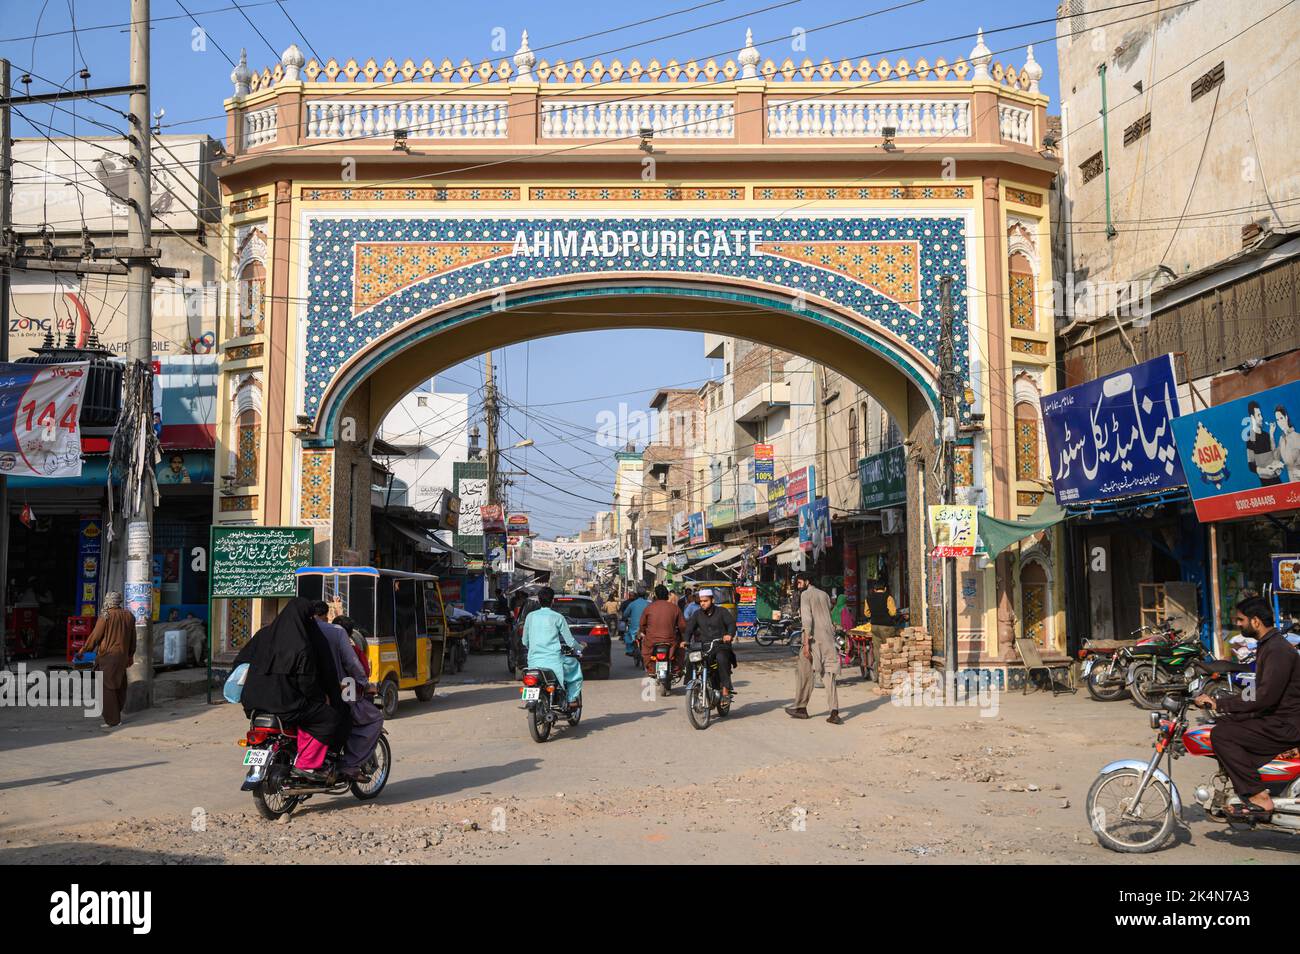 BAHAWALPUR, PAKISTÁN - 24 DE FEBRERO de 2020; Entrada de la Puerta de Ahmadpuri en Bahawalpur Foto de stock